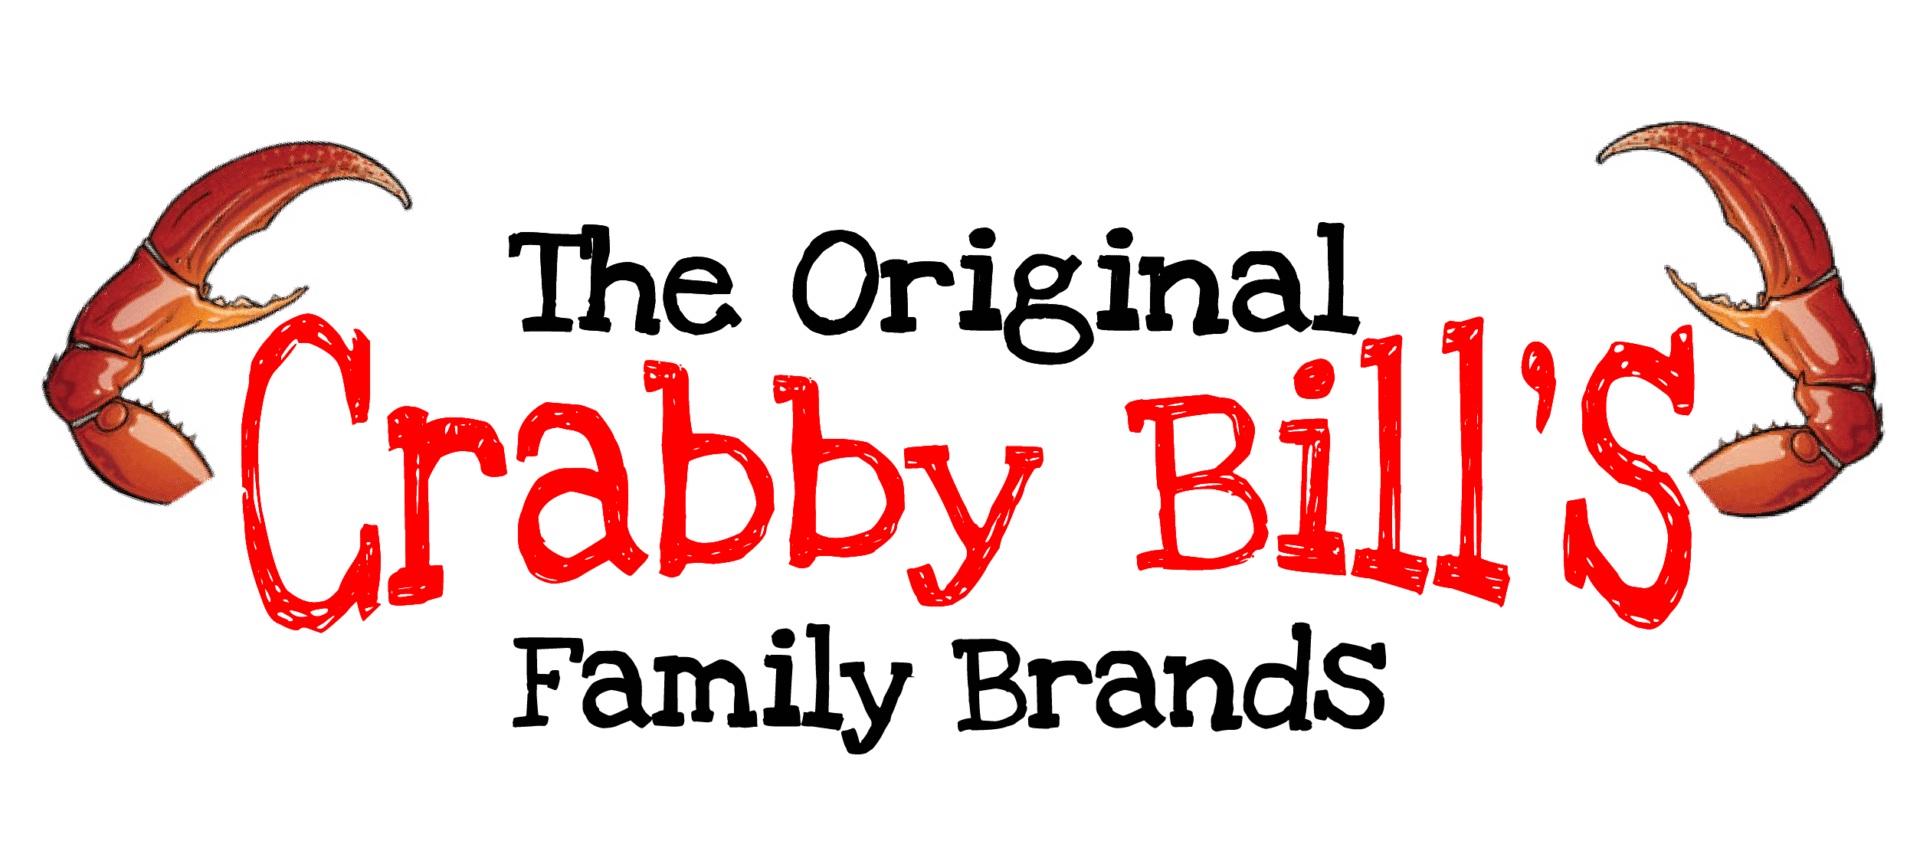 The Original Crabby Bill's Family Brands